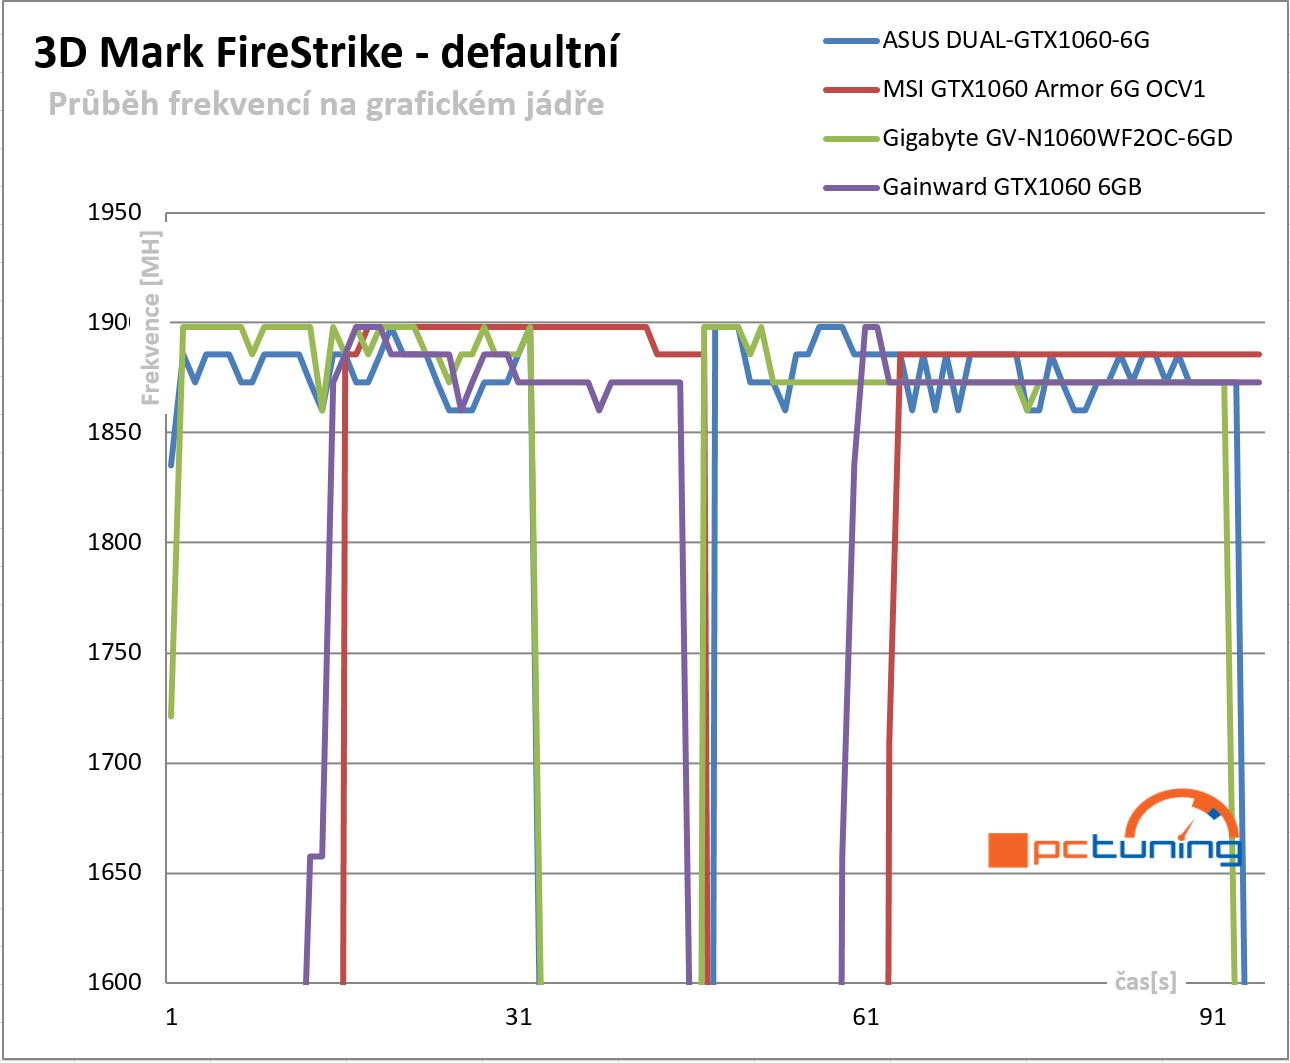  Průběhy frekvencí GPU v 3DMark FireStrike - defaultní nastavení frekvencí 